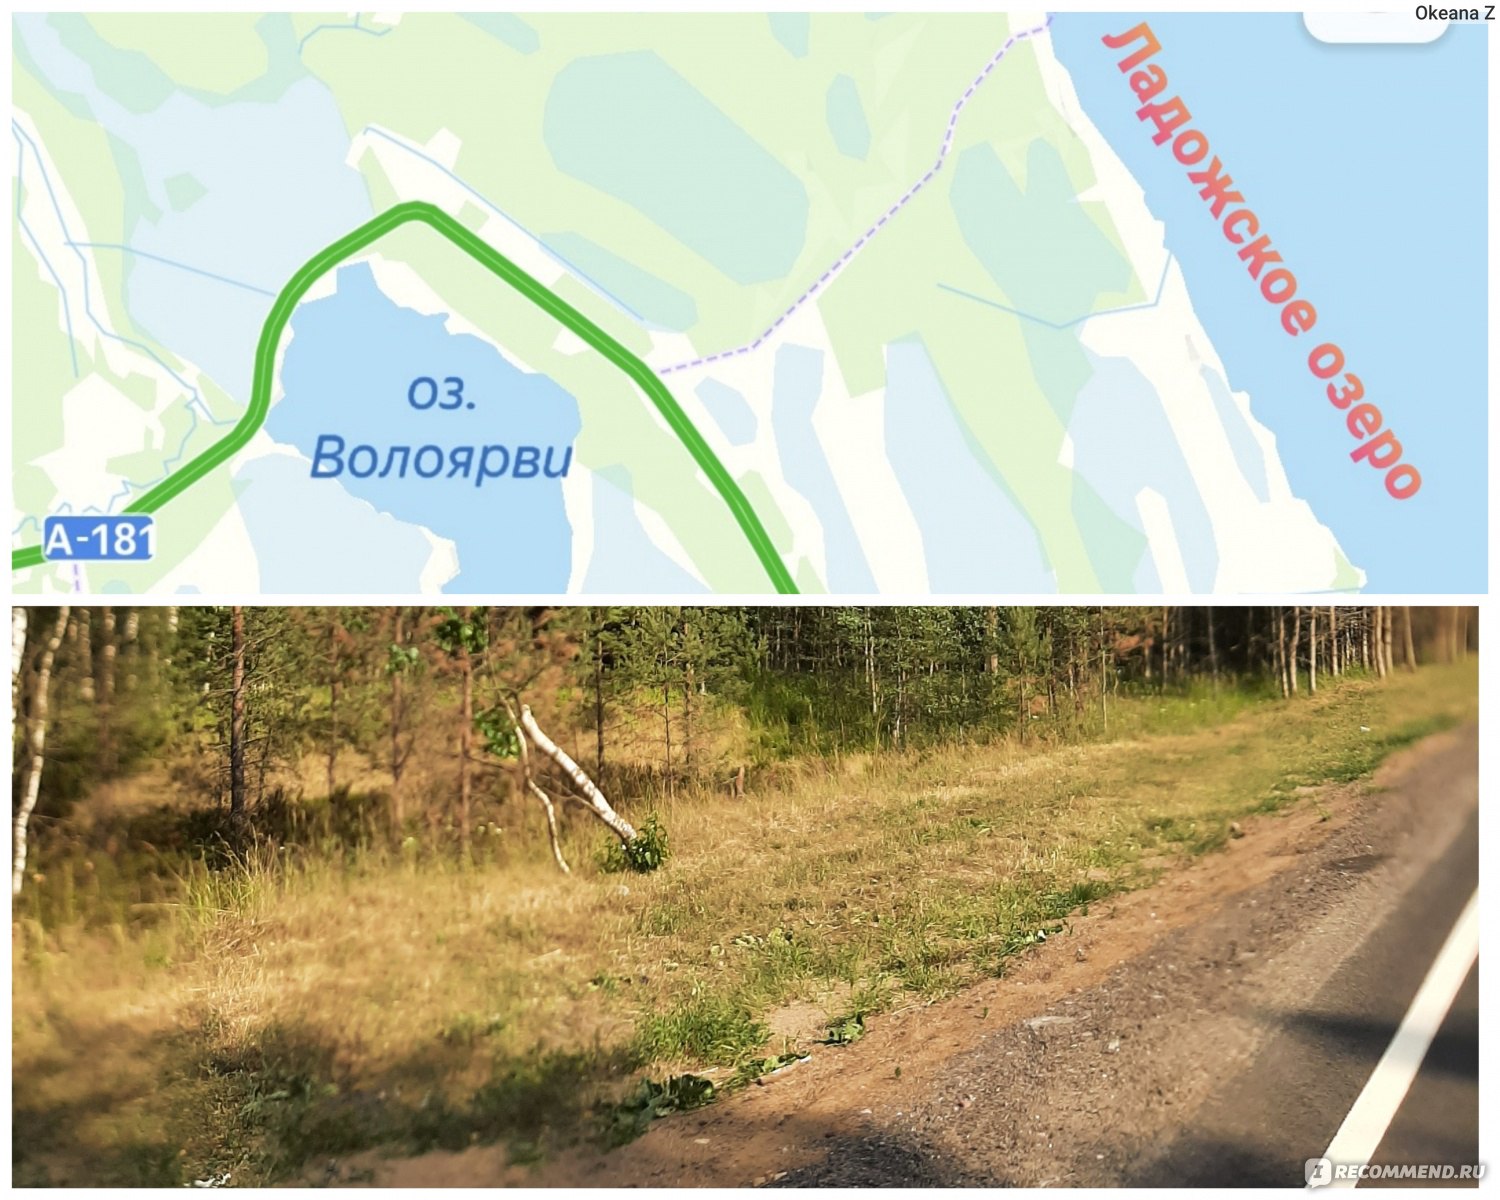 Оз Волоярви на карте Ленинградской области